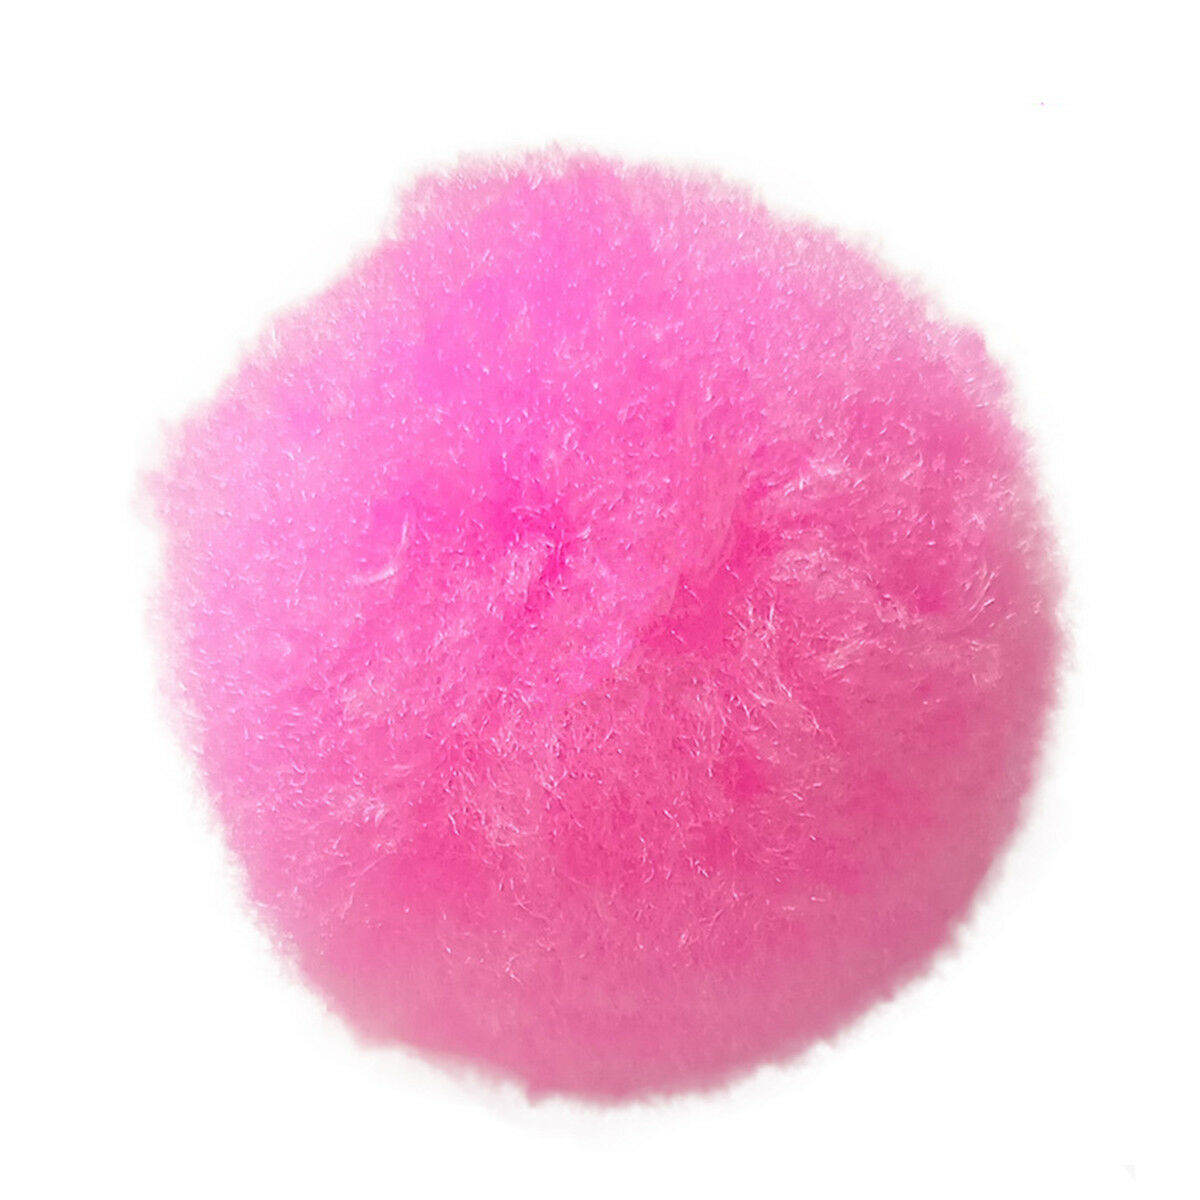 2000Pcs Mixed Color Mini Soft Fluffy Pom Poms Pompom Ball 8mm for Kids DIY Craft